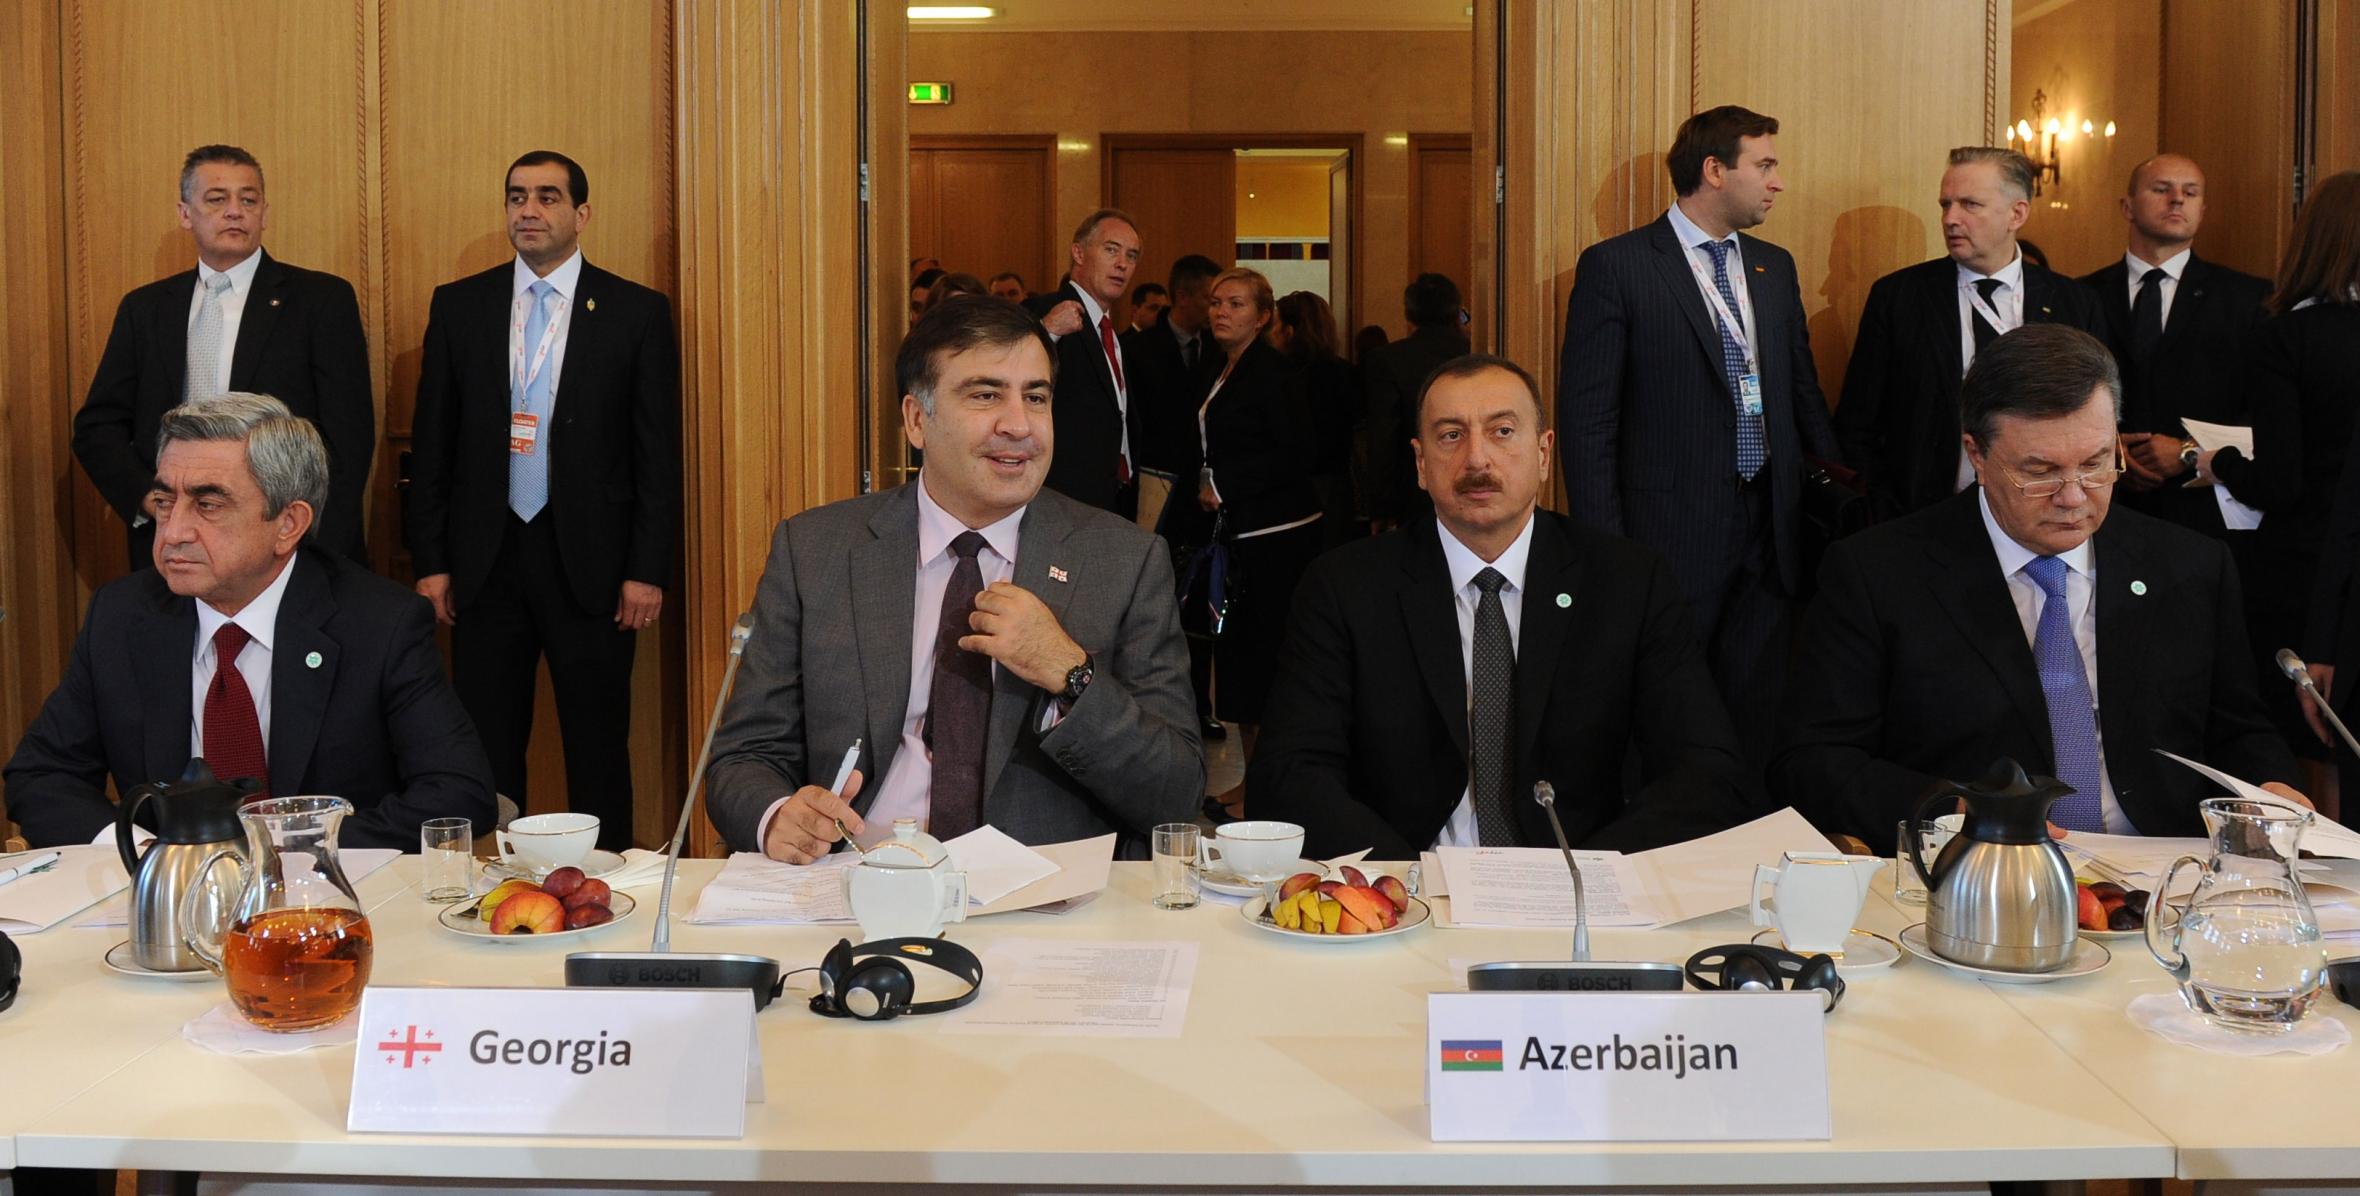 Ильхам Алиев принял участие в саммите «Восточное партнерство» Европейского Союза в Варшаве